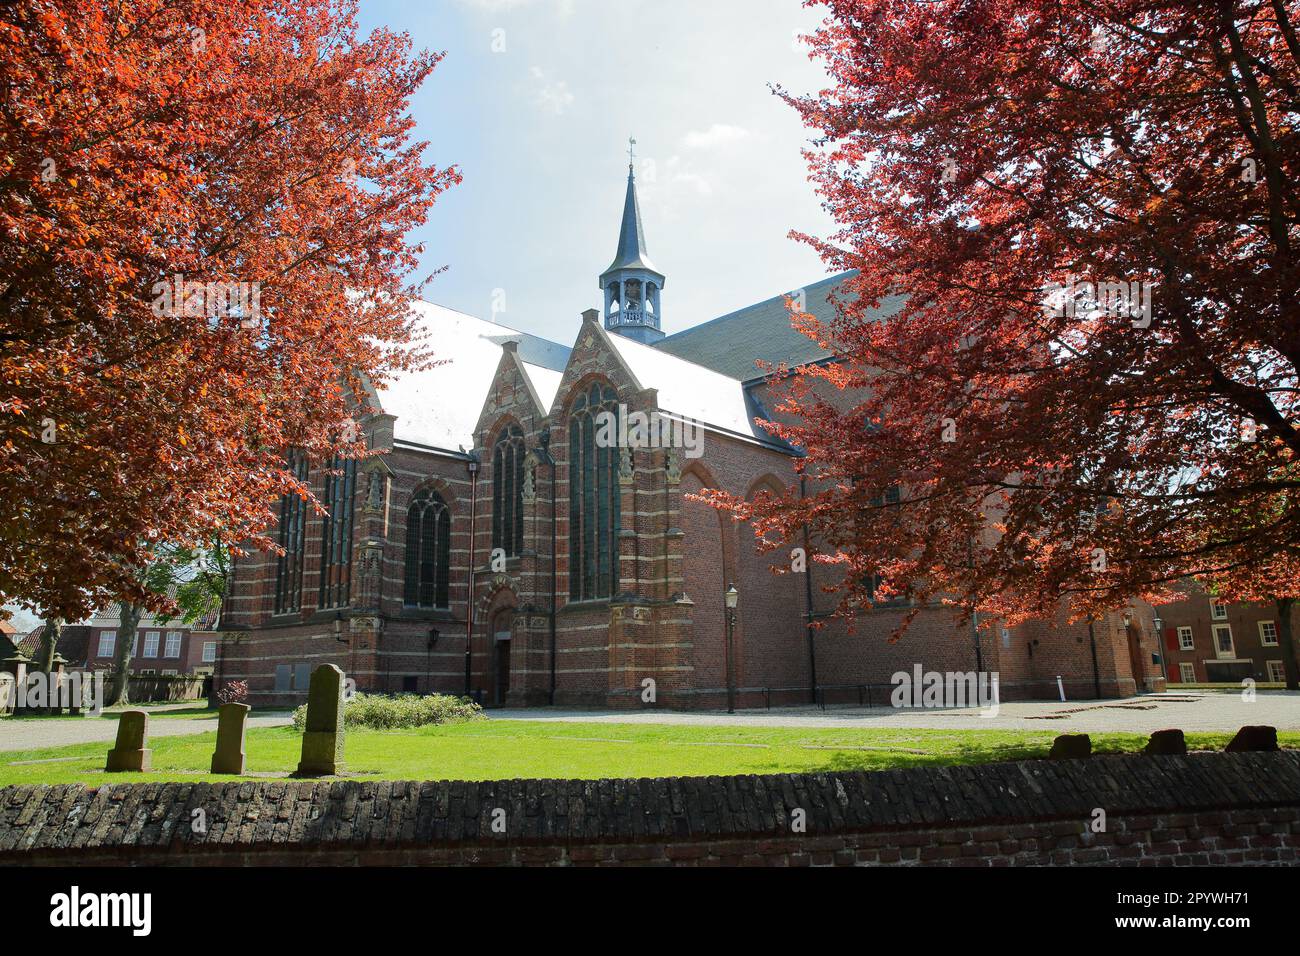 Die protestantische Catharijne Kirche in Heusden, Nordbrabant, Niederlande, eine befestigte Stadt, 19km km von Hertogenbosch entfernt Stockfoto